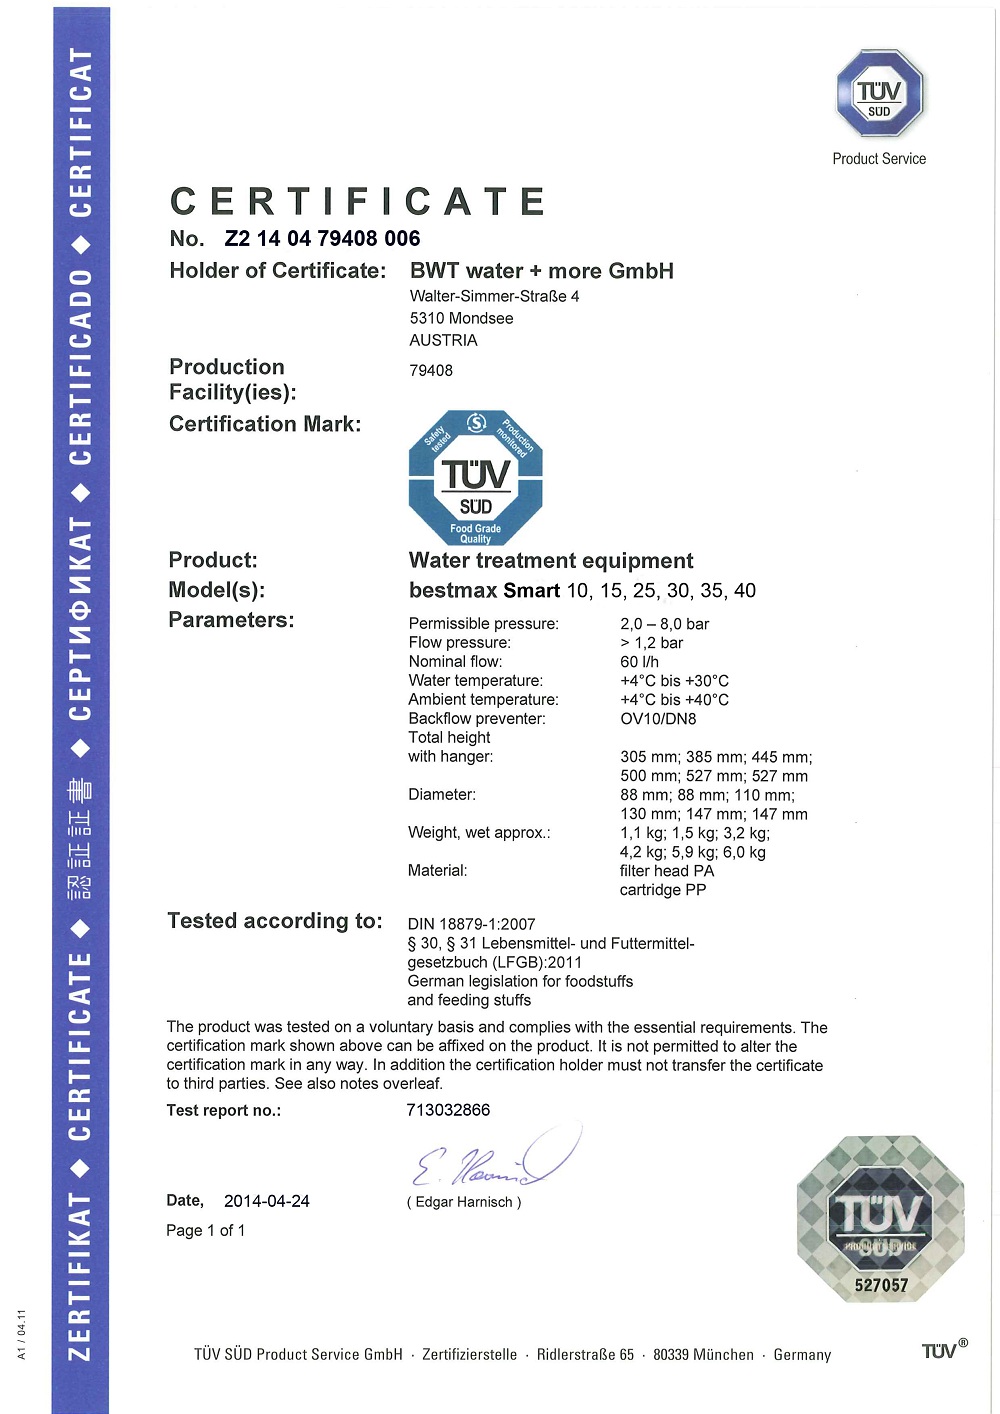 德国TüV认证证书